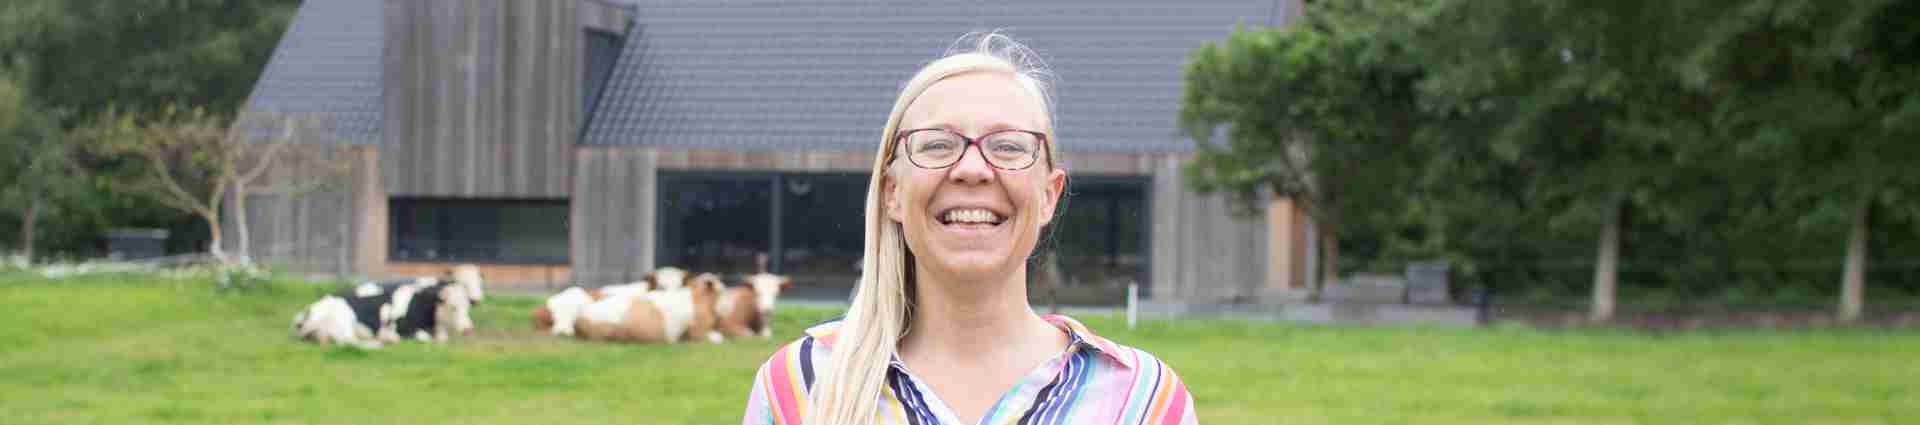 Klinisch Psycholoog - Anneke Hol